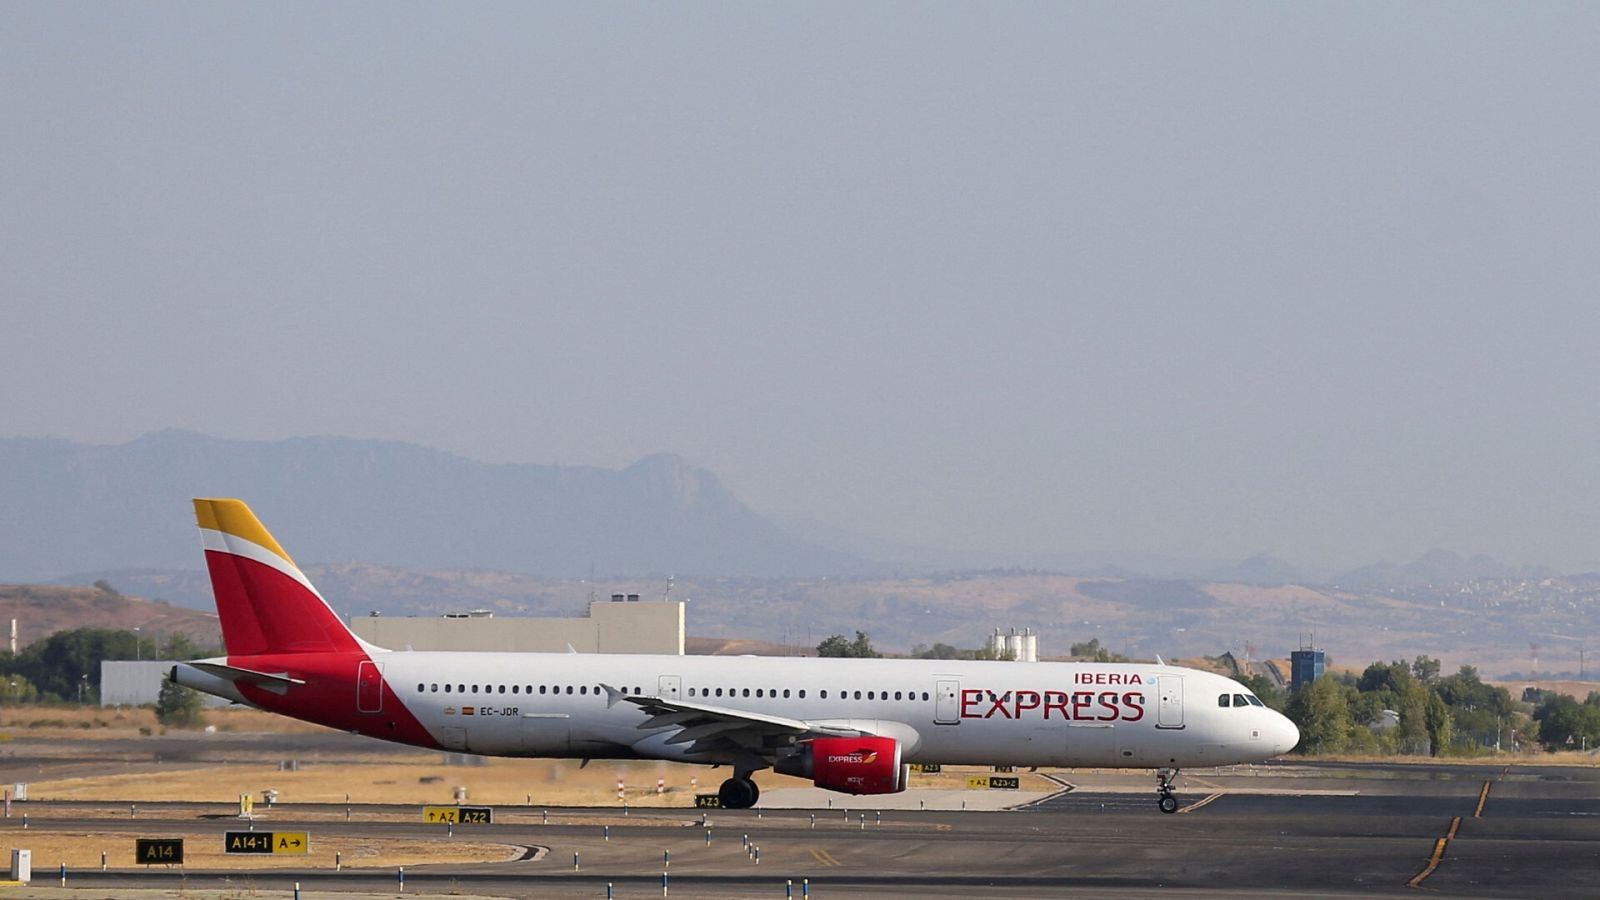 Un avión de Iberia Express en el aeropuerto Internacional Adolfo Suárez Madrid-Barajas